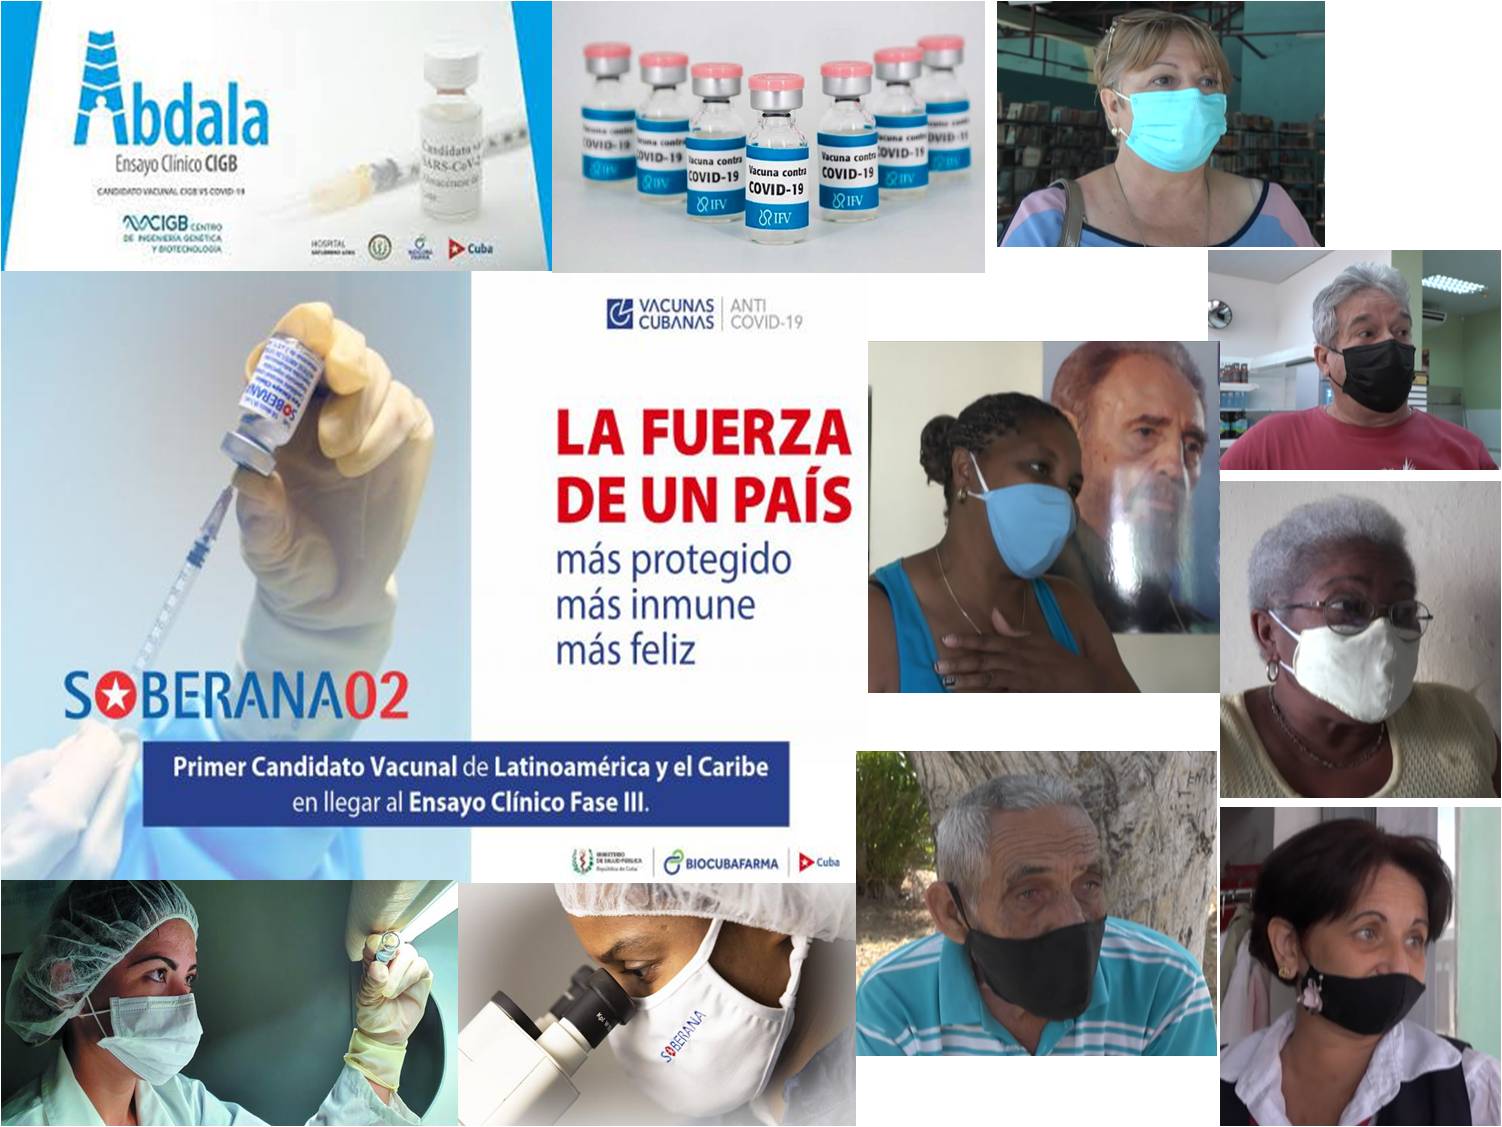 Moronenses expresan confianza en candidatos vacunales cubanos contra la Covid-19